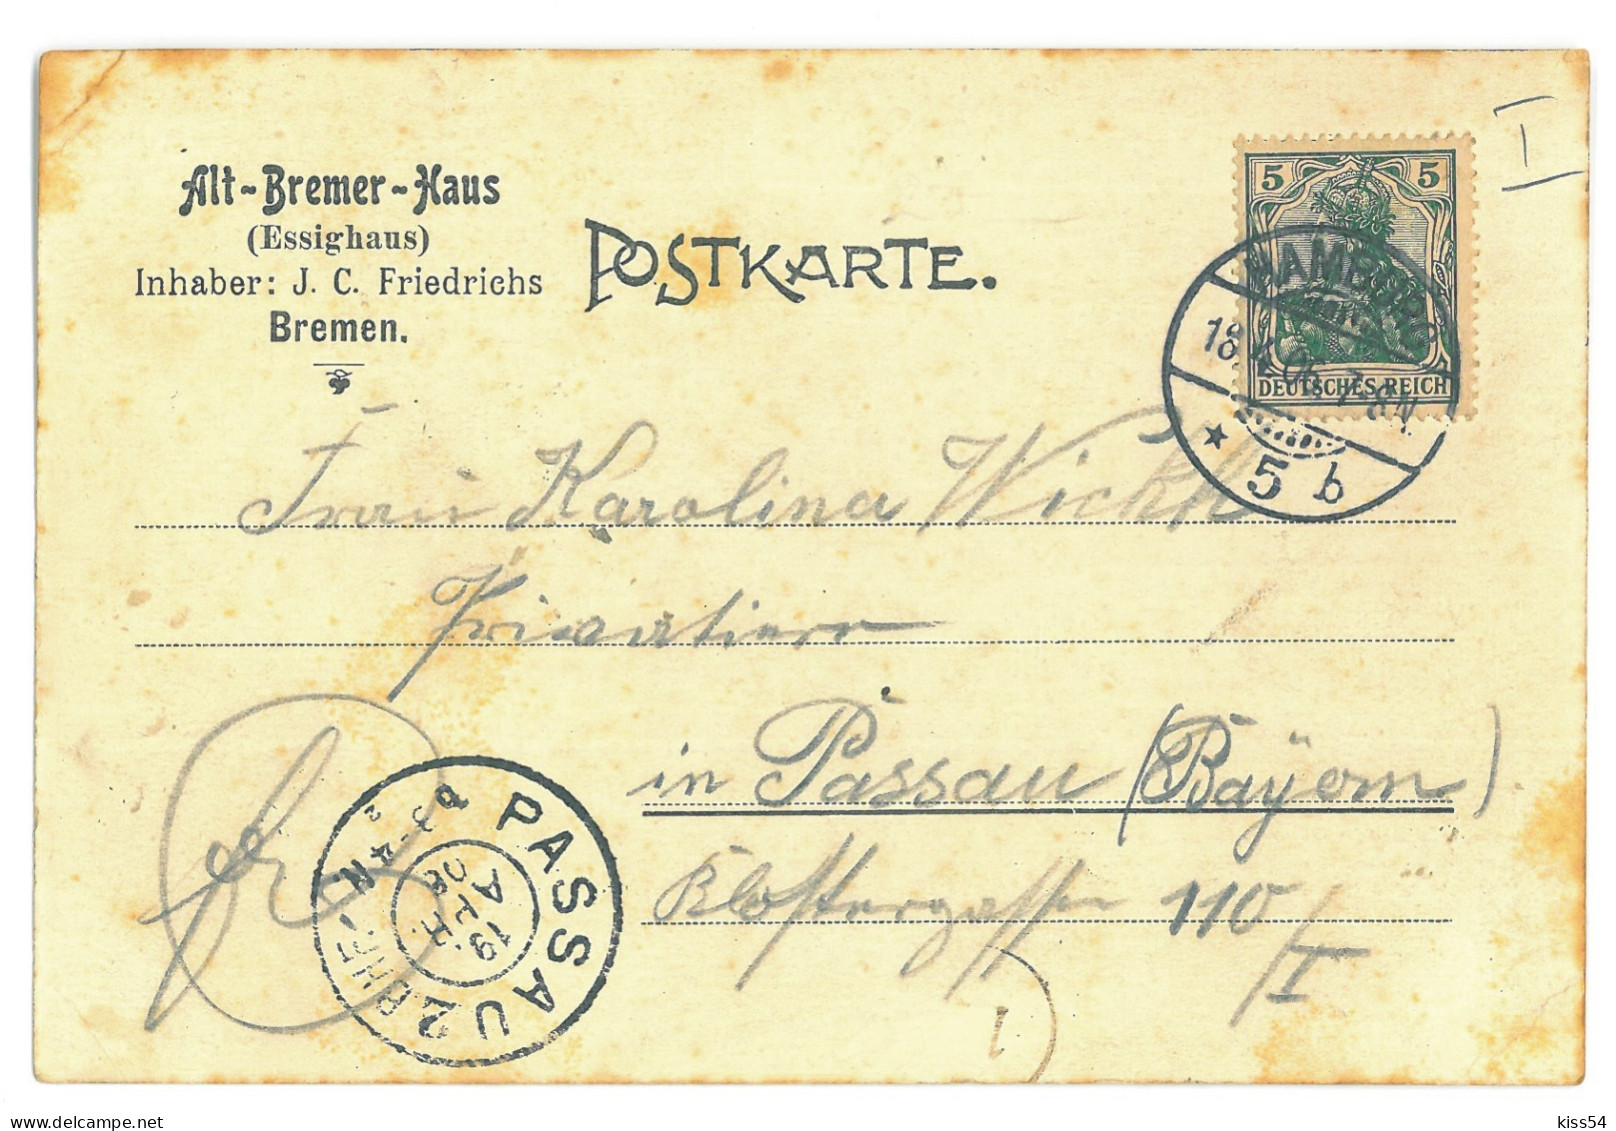 GER 08 - 16871 BREMEN, Litho, Germany - Old Postcard - Used - 1906 - Bremen